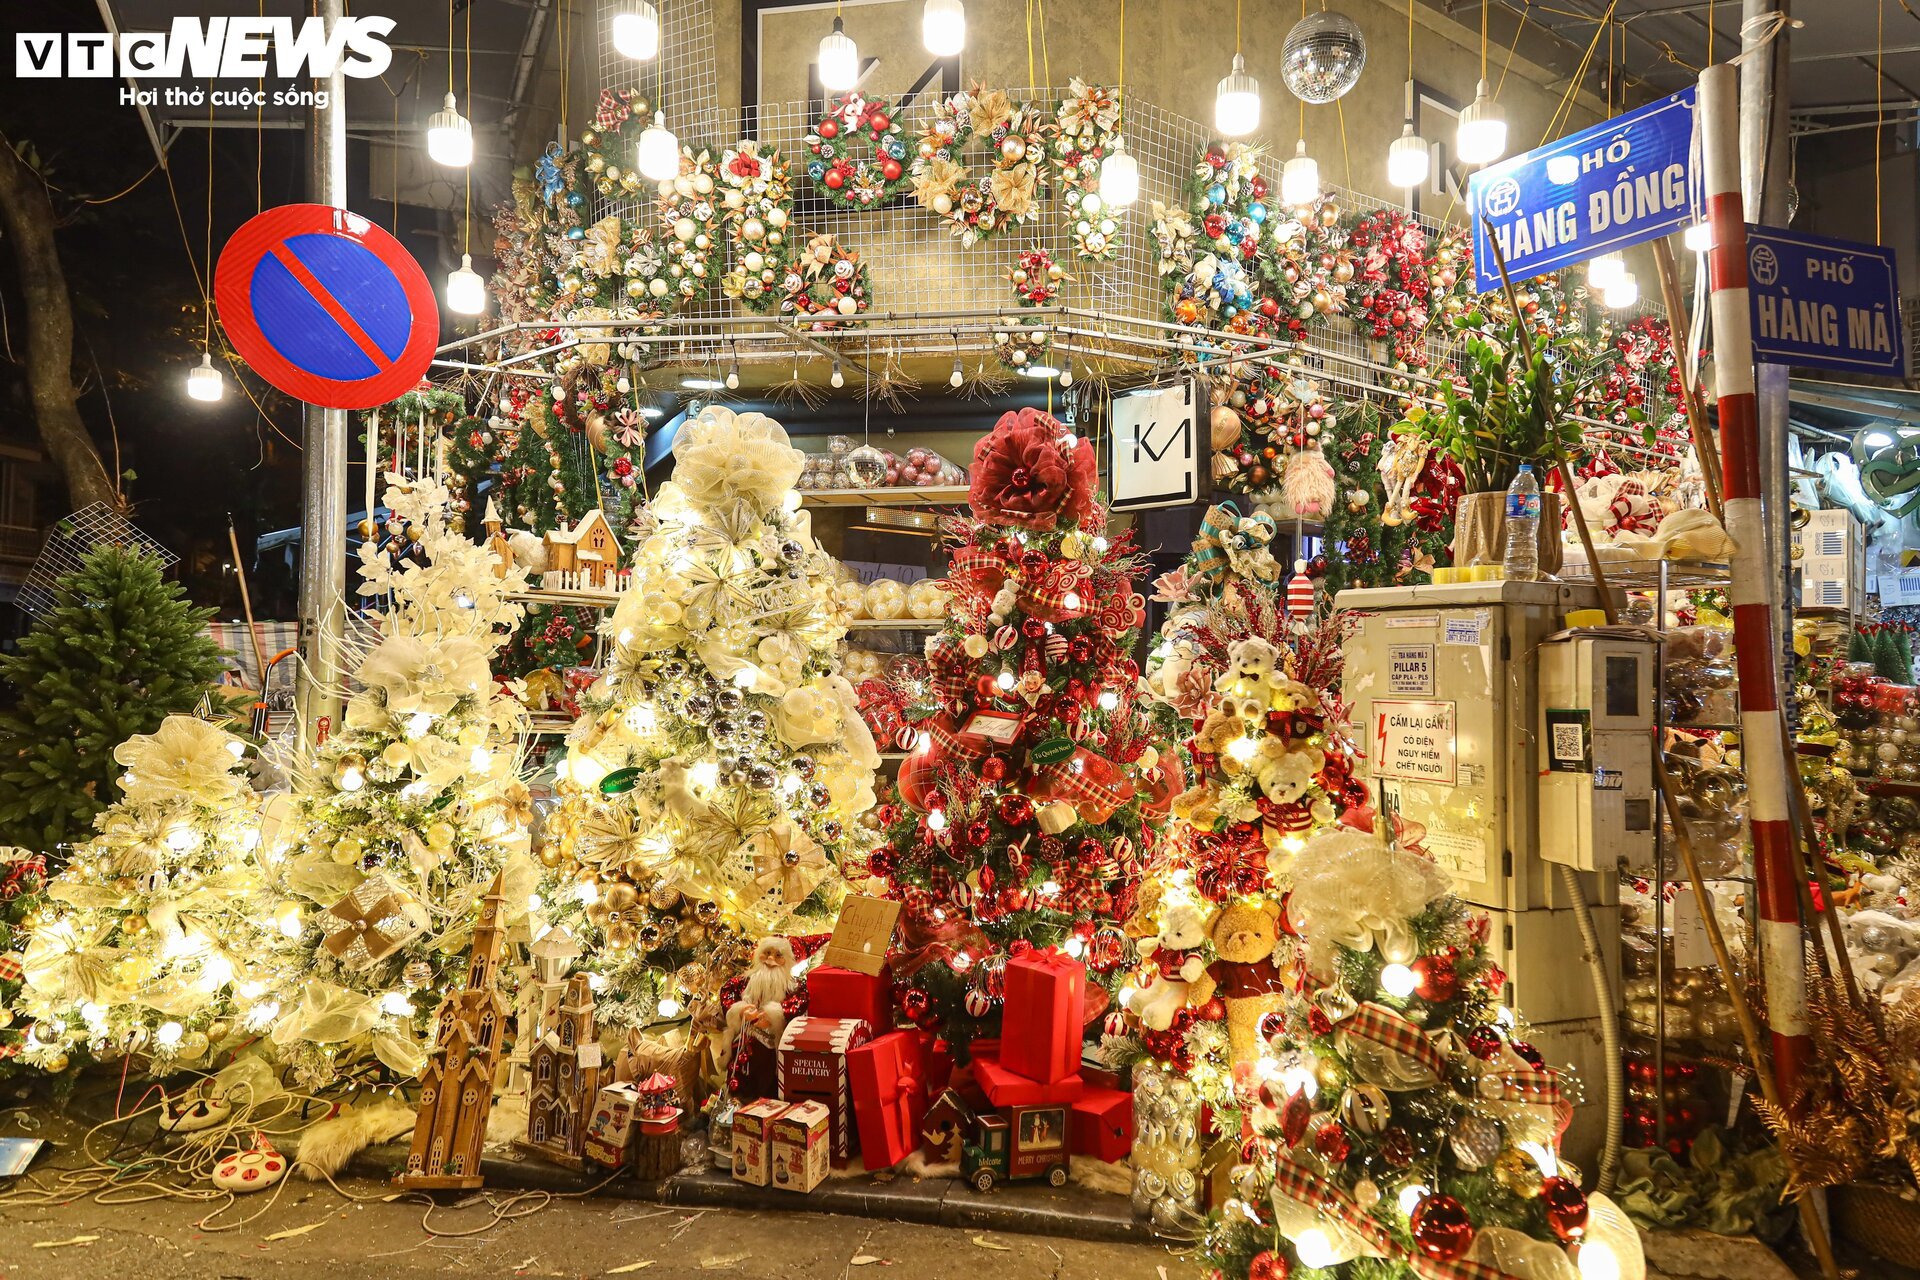 Khách xem nhiều hơn mua, thị trường đồ trang trí Giáng sinh ở Hà Nội 'cảm lạnh' - Ảnh 10.